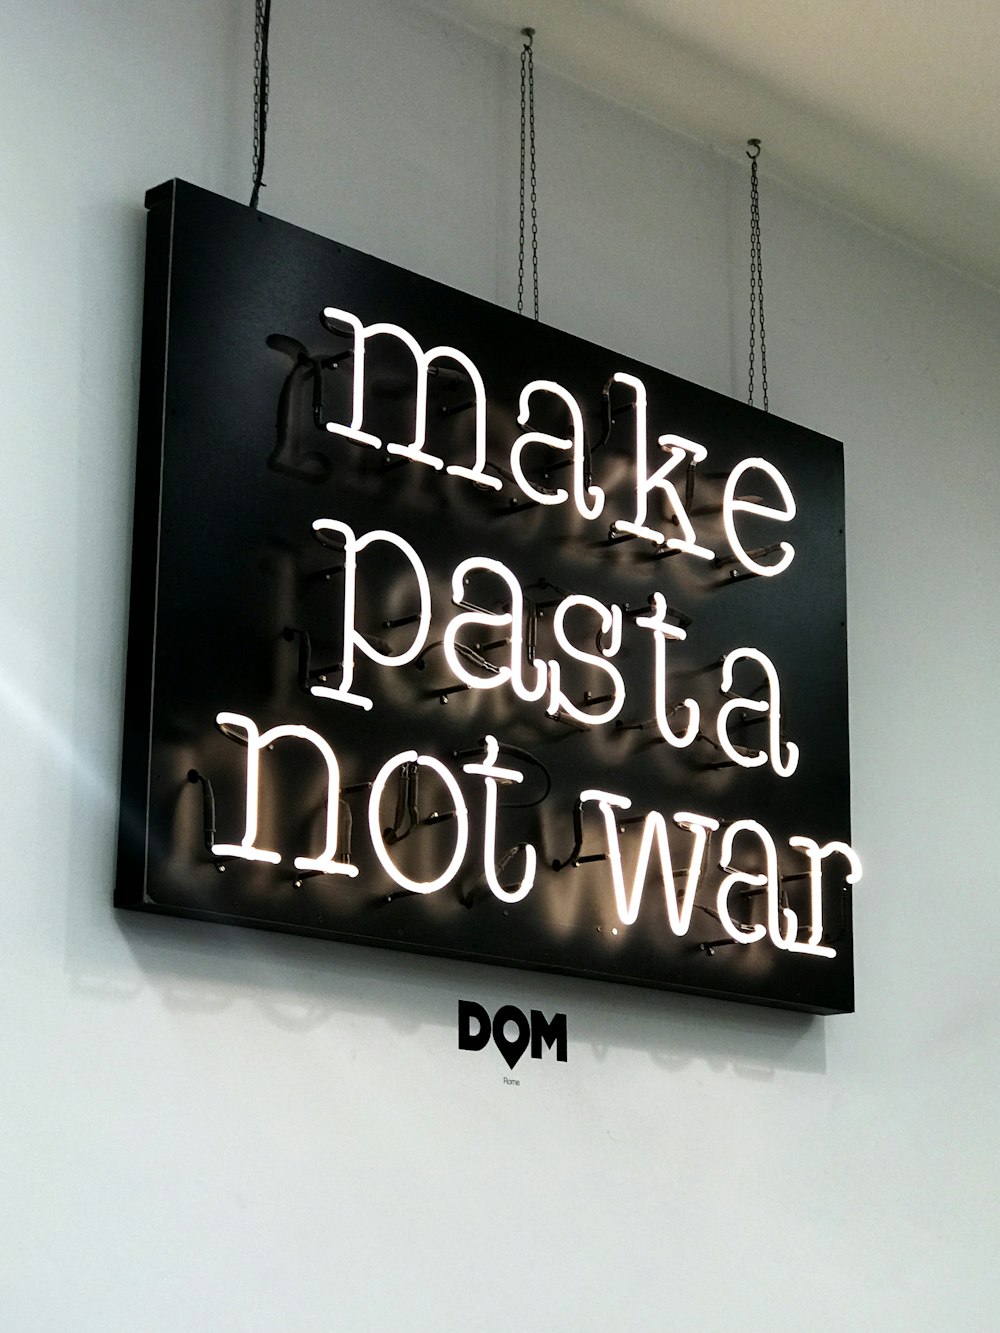 Enseignes au néon Make Pasta Not War